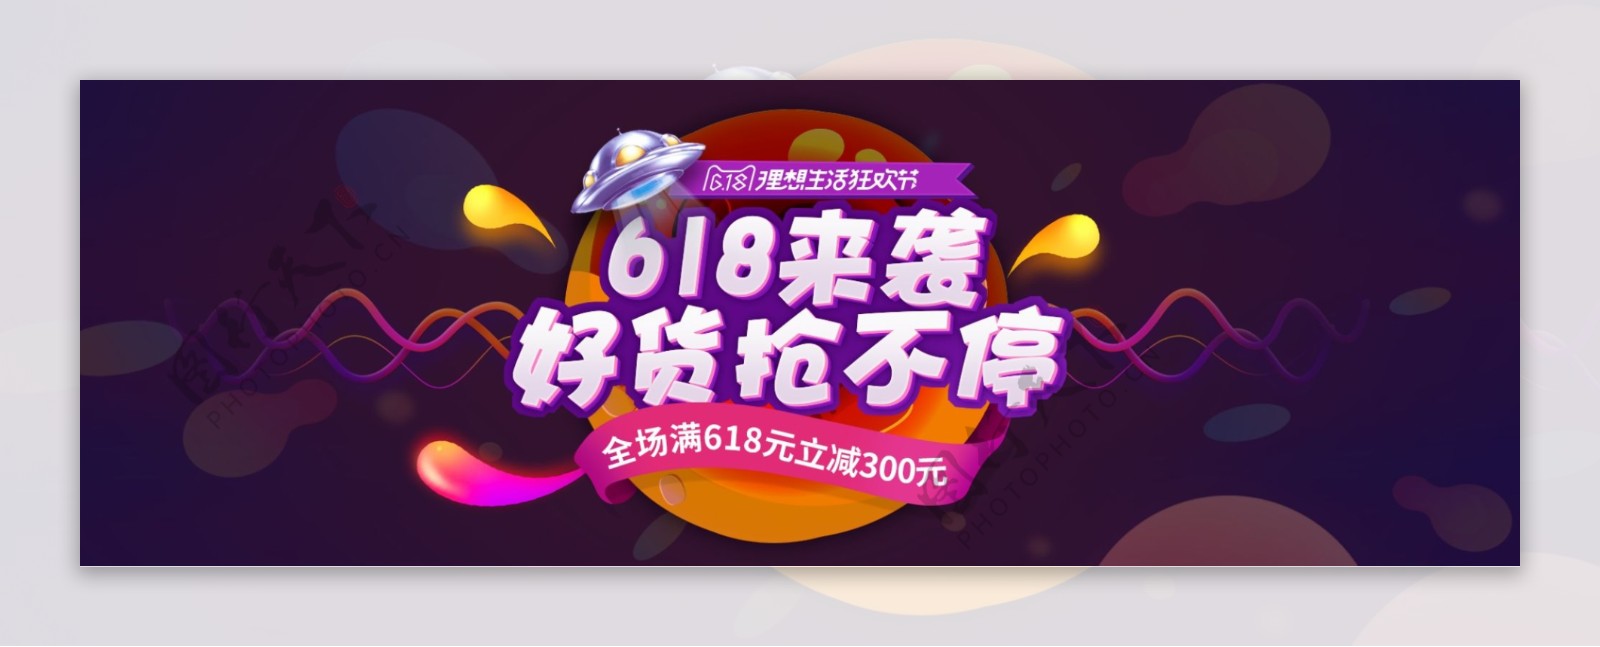 电商京东618淘宝天猫理想生活狂欢节海报